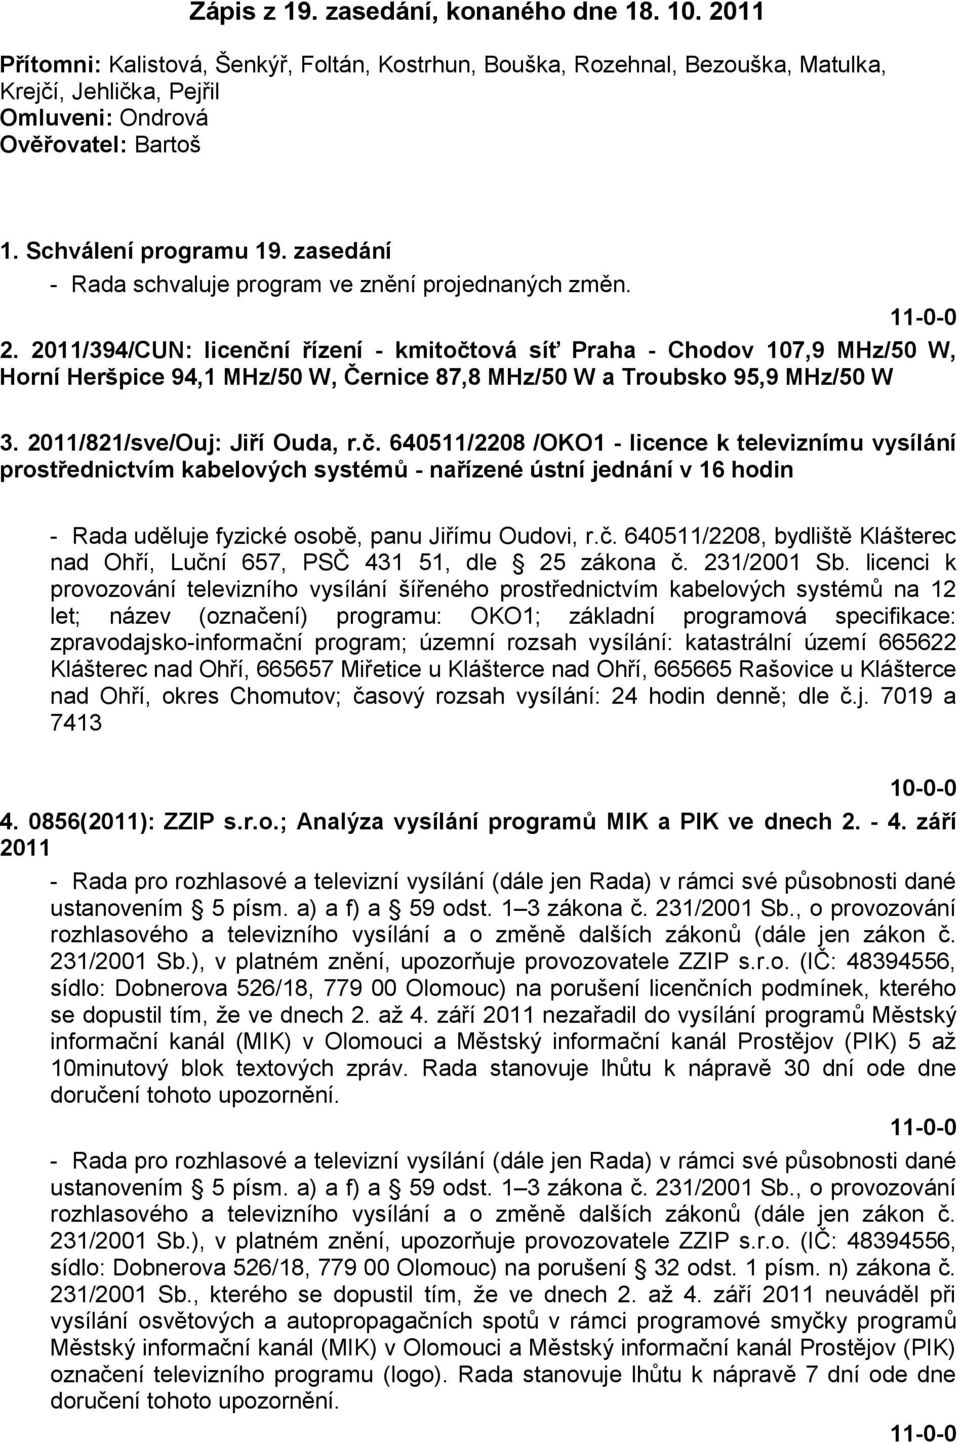 2011/394/CUN: licenční řízení - kmitočtová síť Praha - Chodov 107,9 MHz/50 W, Horní Heršpice 94,1 MHz/50 W, Černice 87,8 MHz/50 W a Troubsko 95,9 MHz/50 W 3. 2011/821/sve/Ouj: Jiří Ouda, r.č. 640511/2208 /OKO1 - licence k televiznímu vysílání prostřednictvím kabelových systémů - nařízené ústní jednání v 16 hodin - Rada uděluje fyzické osobě, panu Jiřímu Oudovi, r.